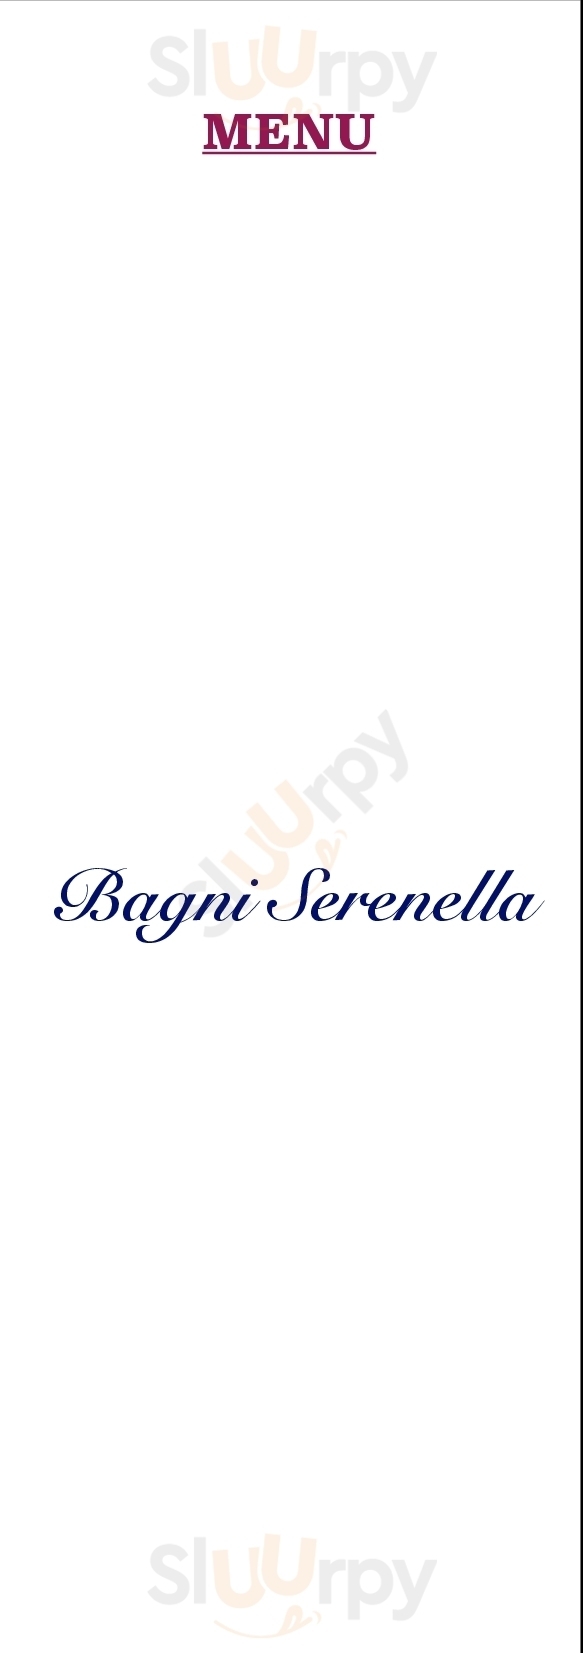 Bagni Serenella Lavagna menù 1 pagina